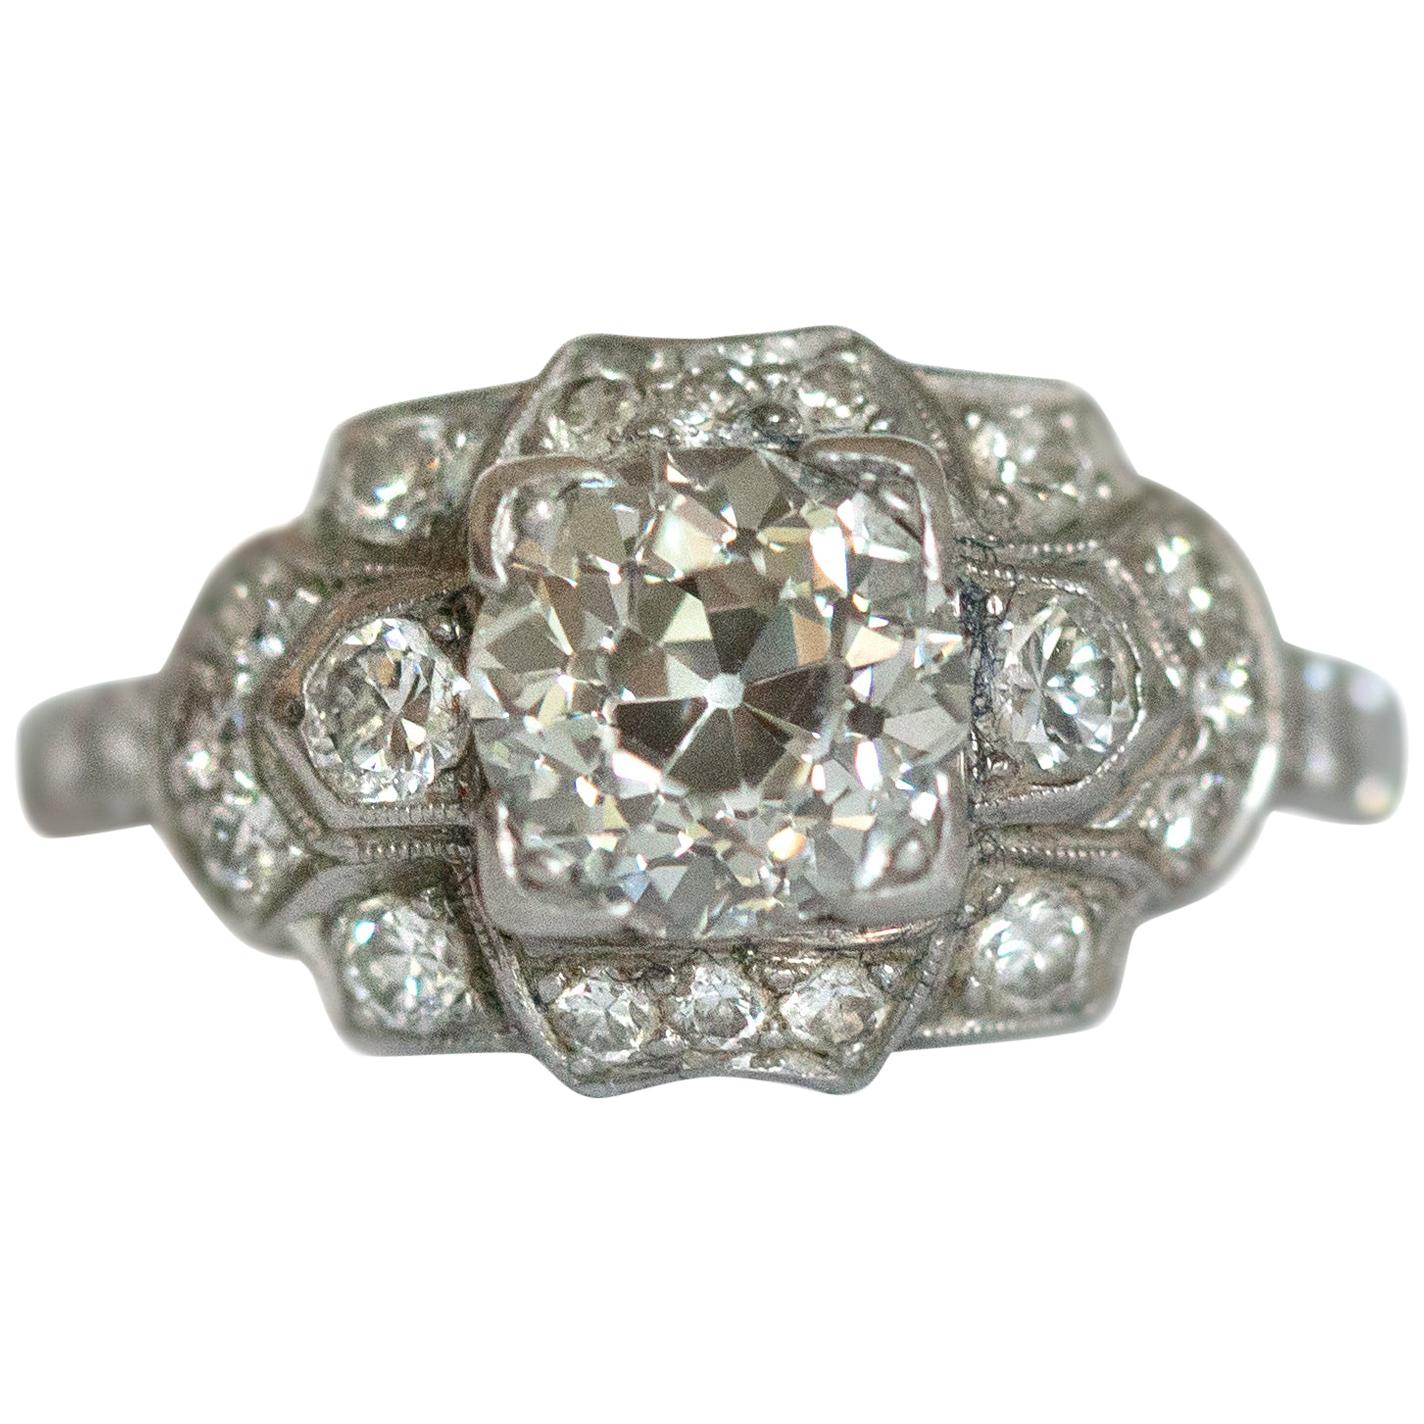 1.01 Carat Diamond Platinum Engagement Ring